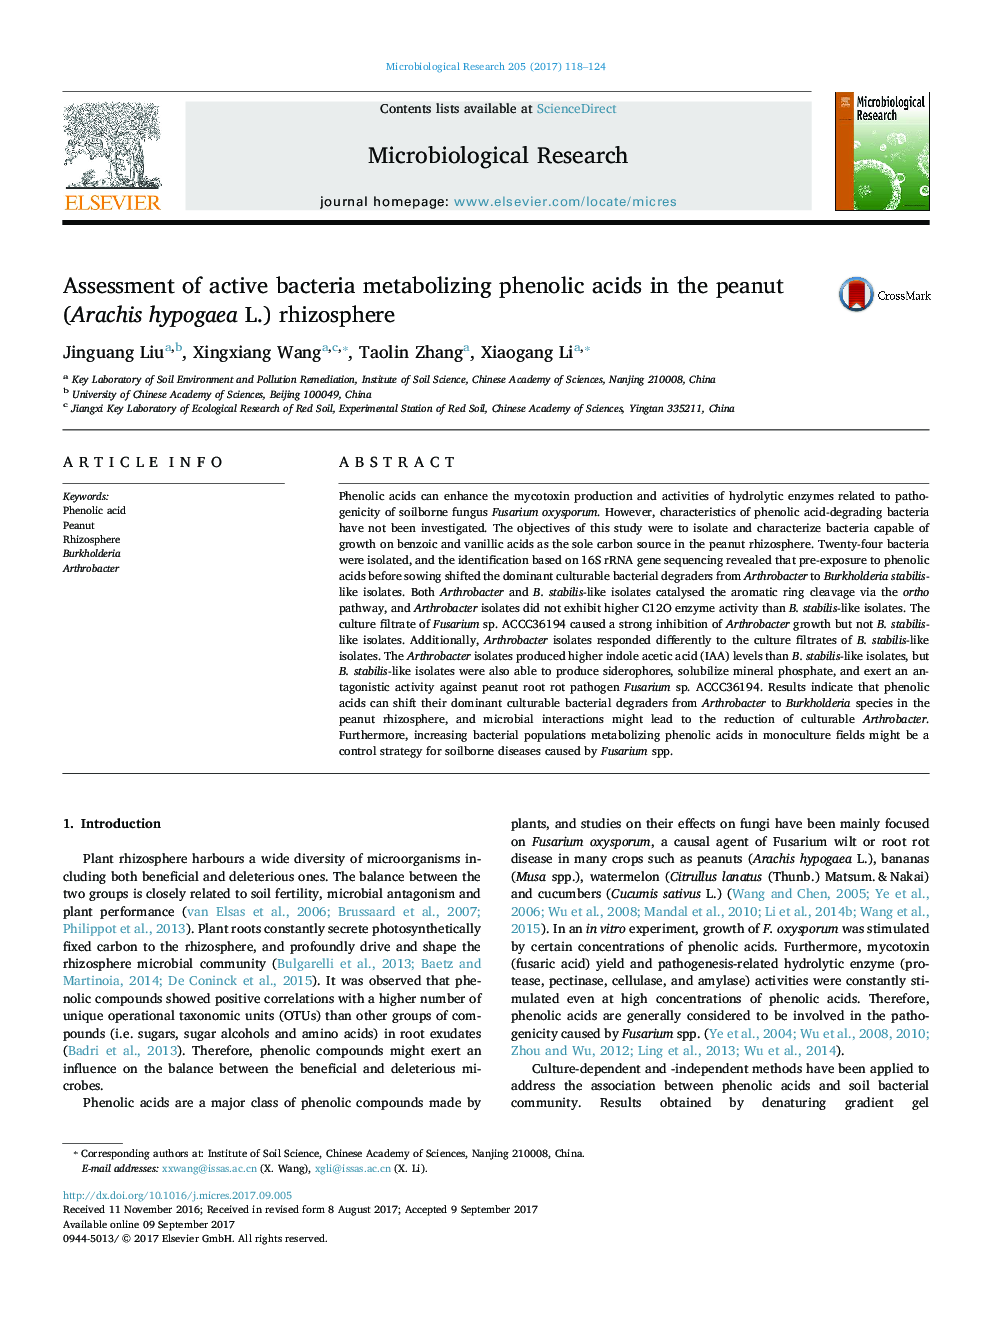 Assessment of active bacteria metabolizing phenolic acids in the peanut (Arachis hypogaea L.) rhizosphere